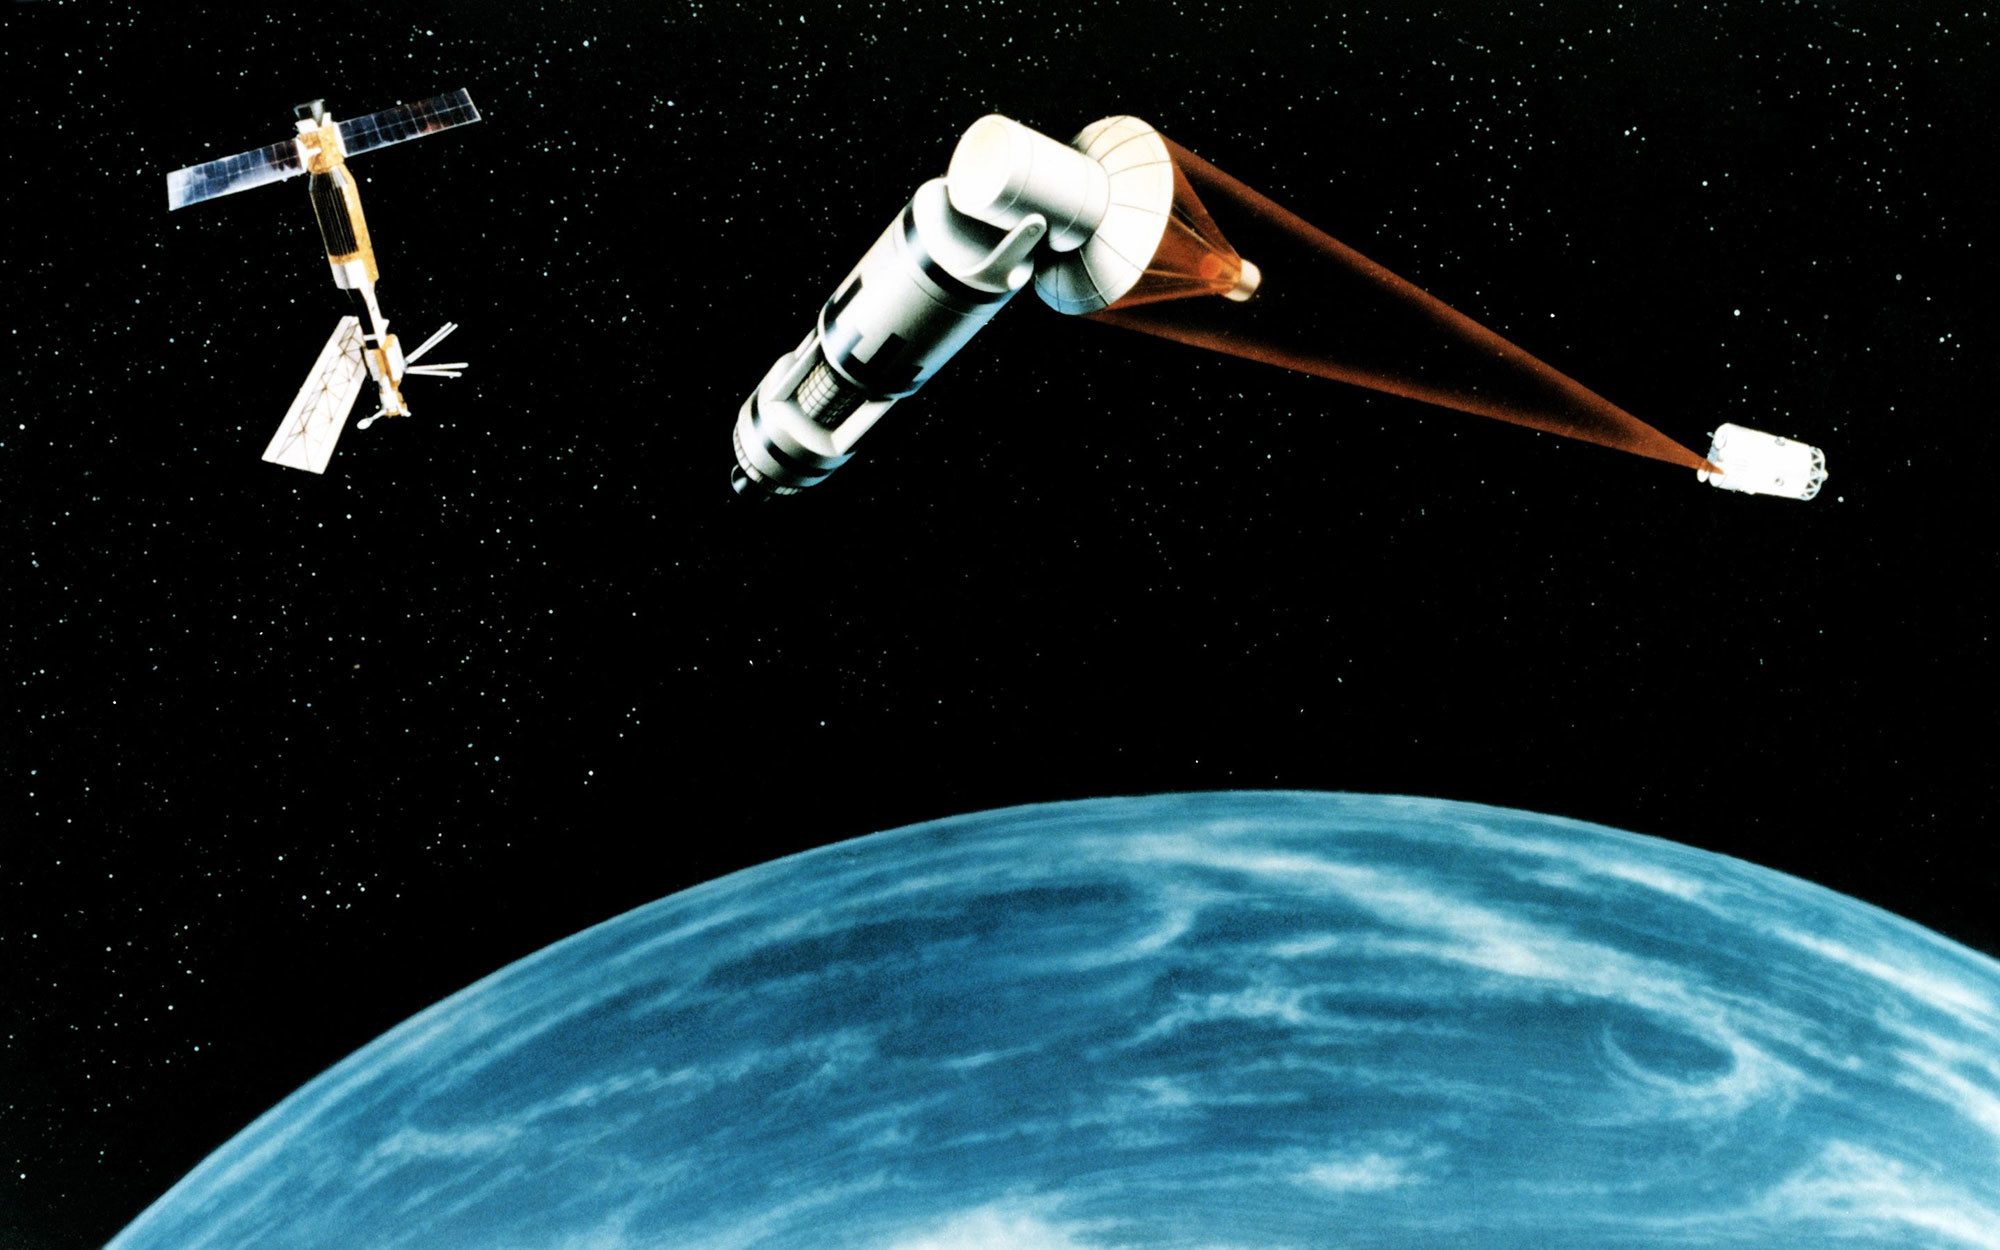 Концепция стратегической оборонной инициативы 1984 года об основополагающем космическом лазере (SBL), в данном случае лазером фтористого водорода. Фото: © Wikipedia.org